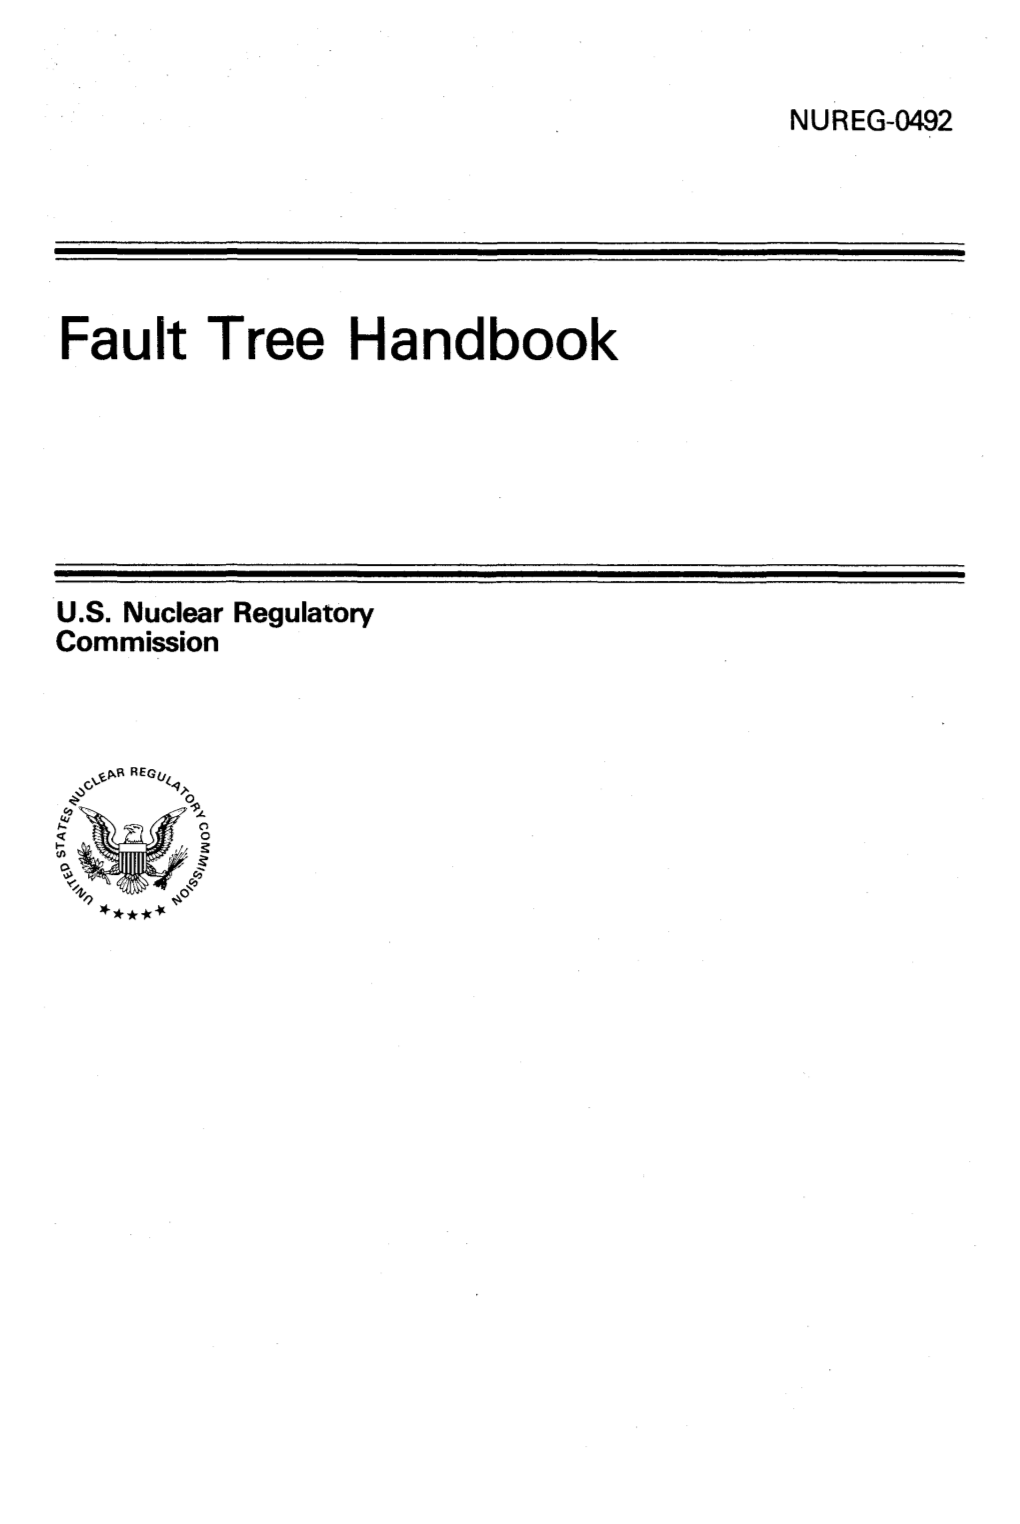 "Fault Tree Handbook"